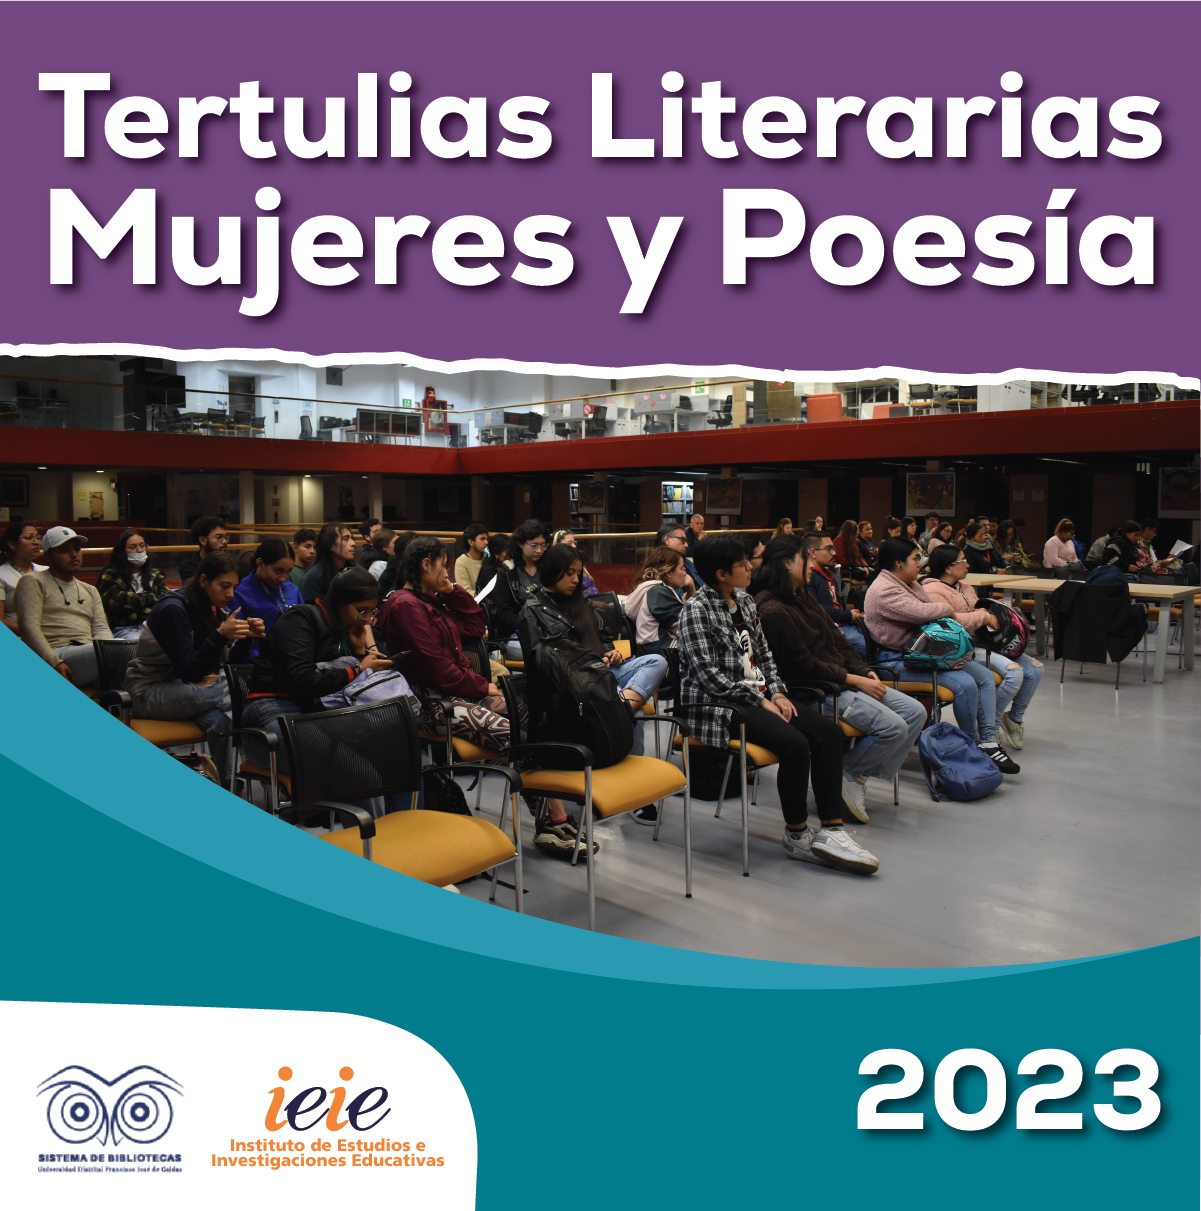 Imagen publicación Tertulias Literarias - Mujeres y Poesía